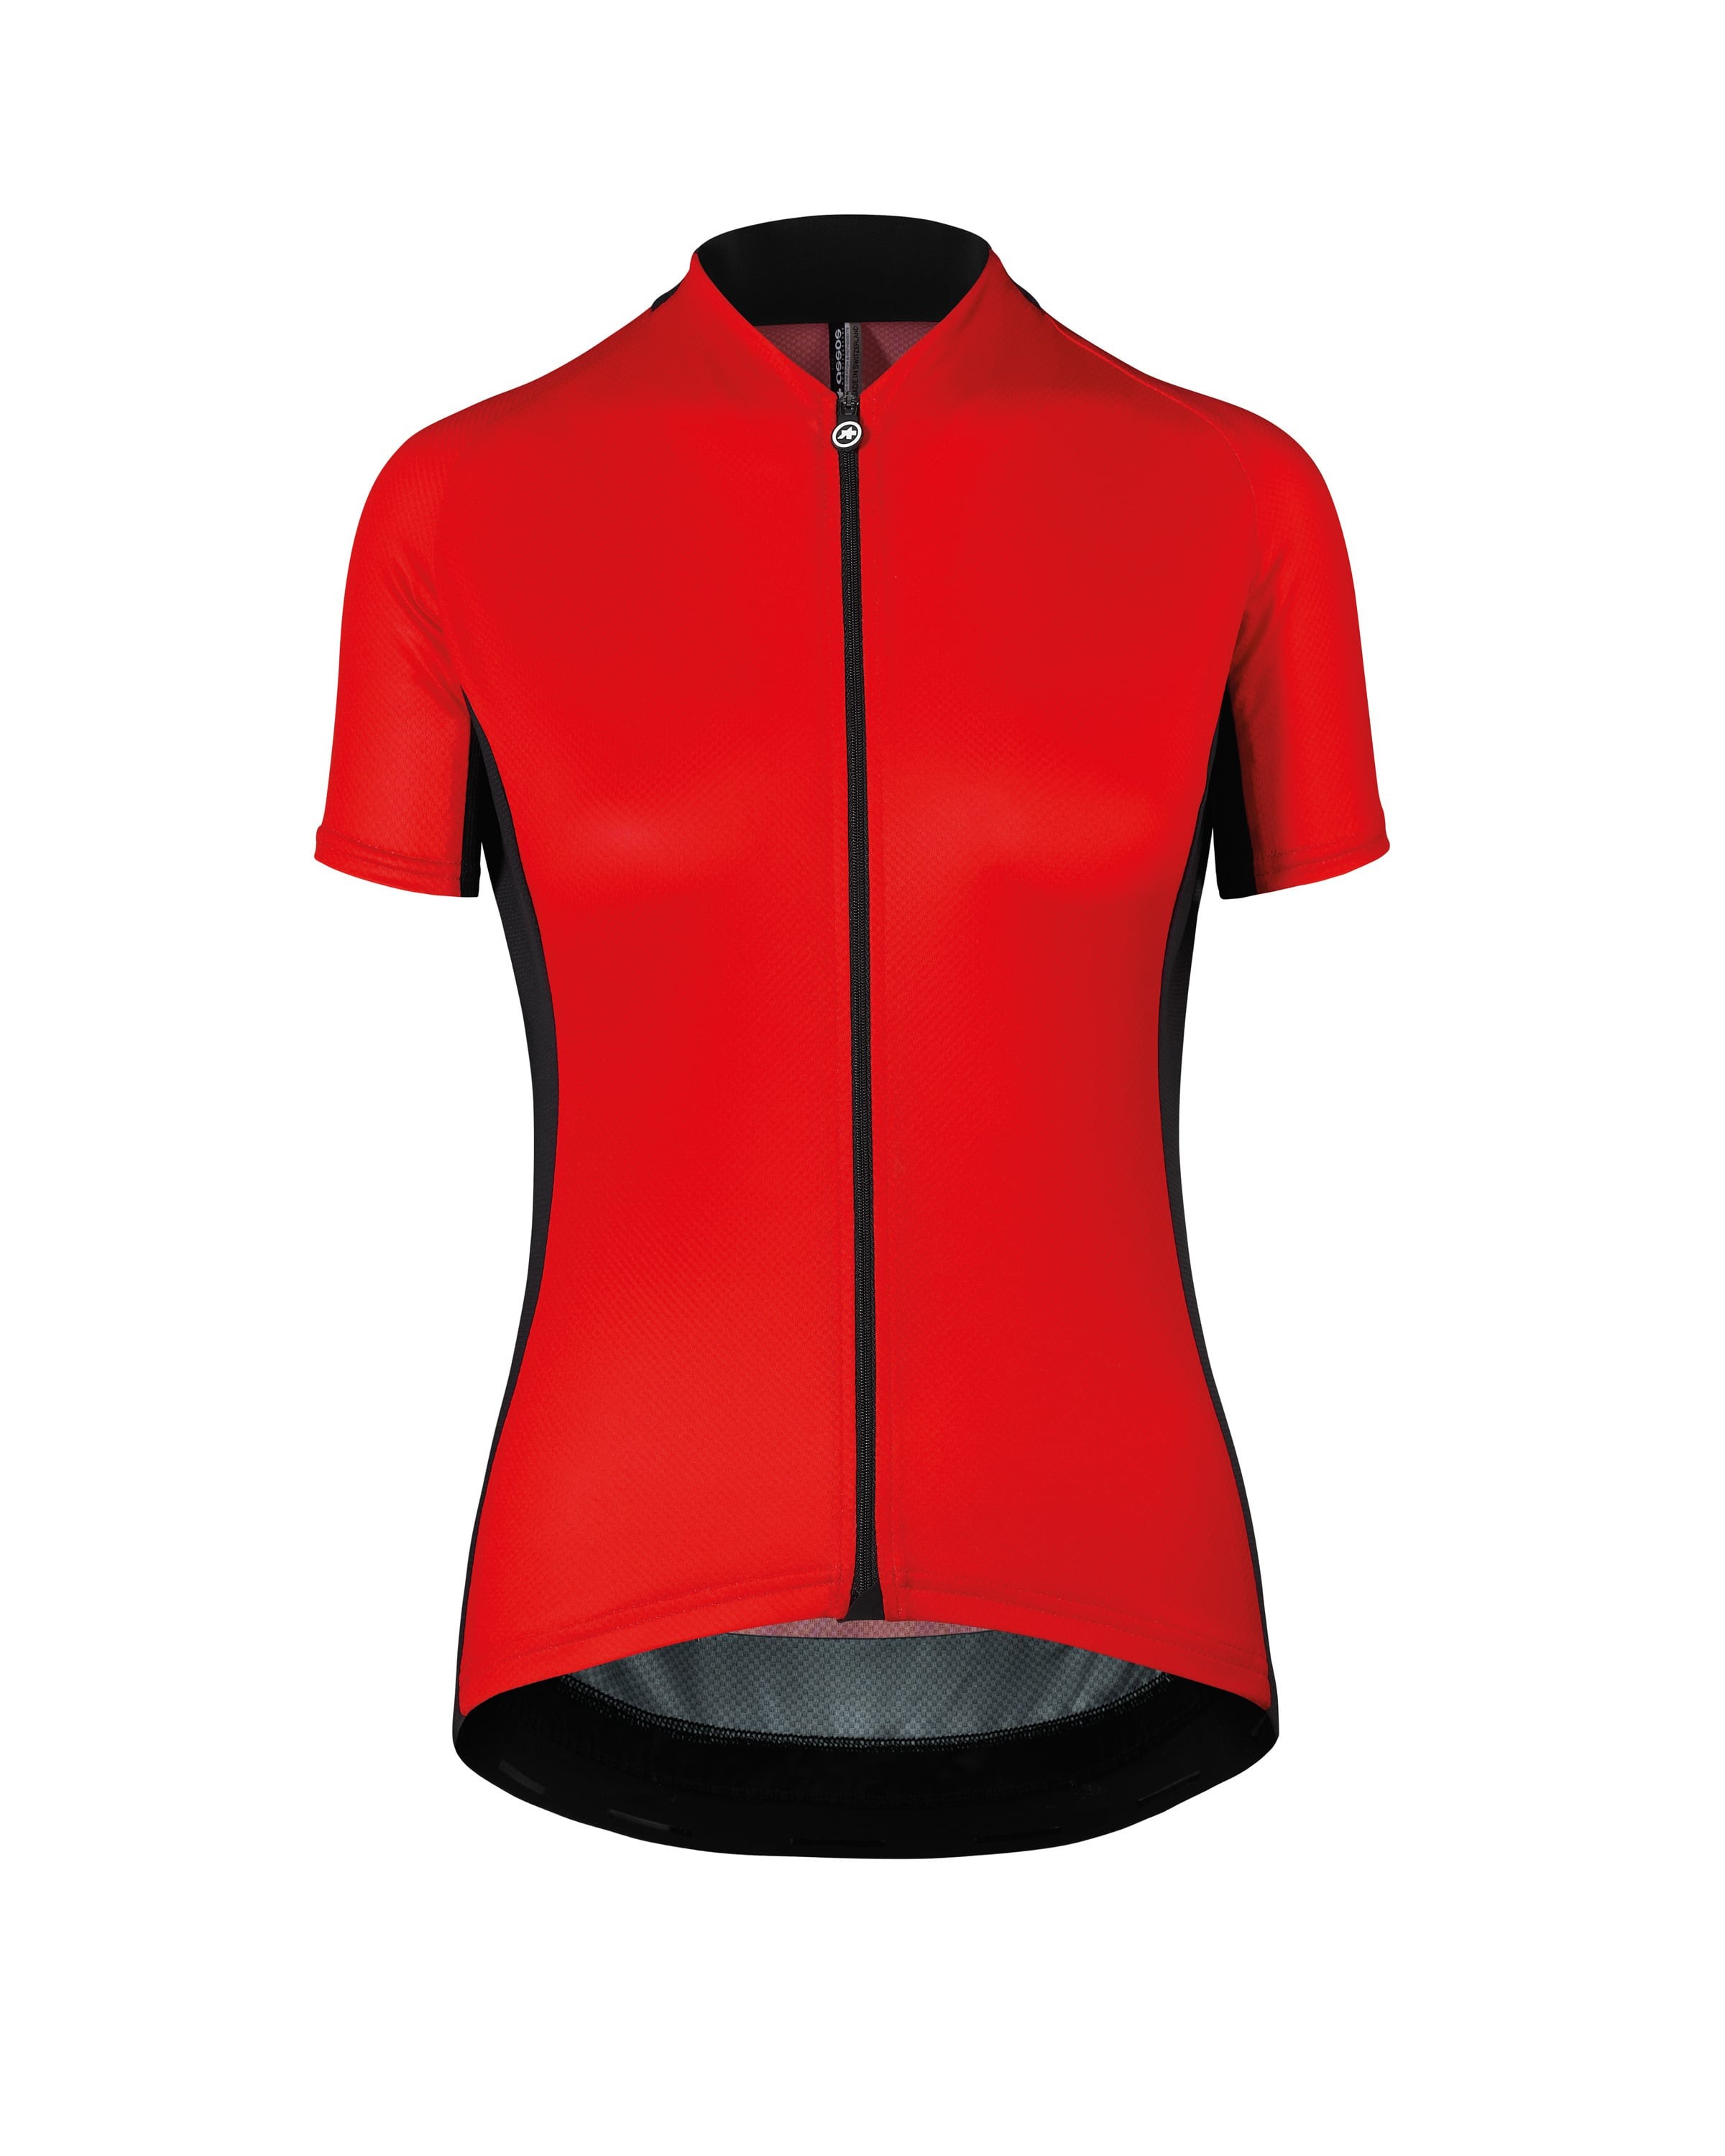 Assos campionissimo uma GT maillot de cyclisme manches courtes femme caleum rouge